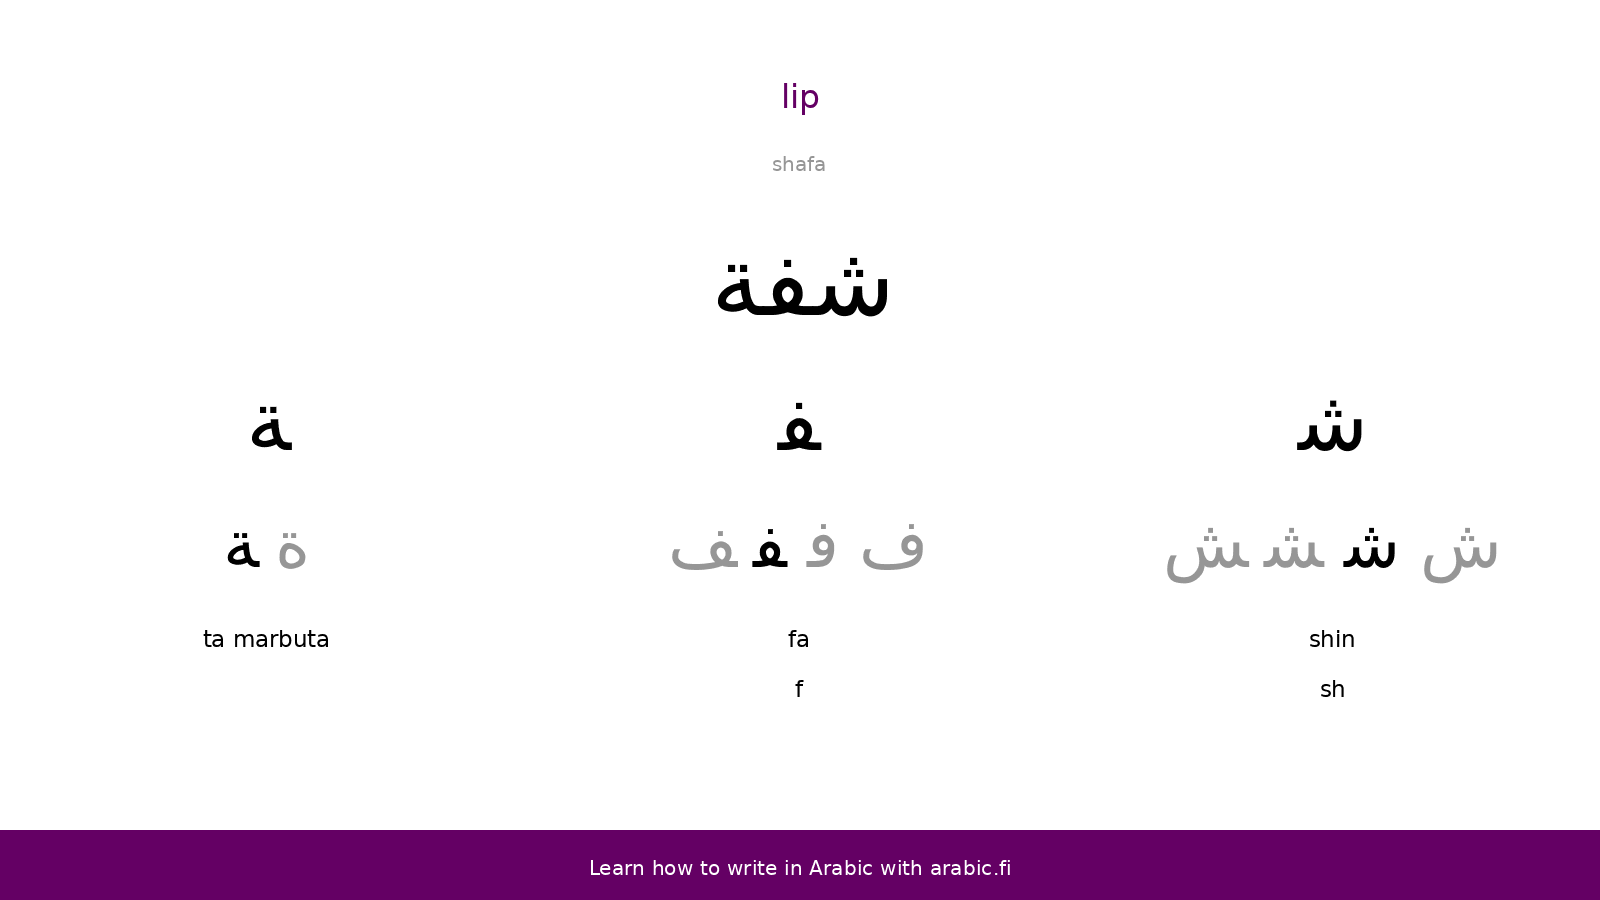 Lip – an Arabic word